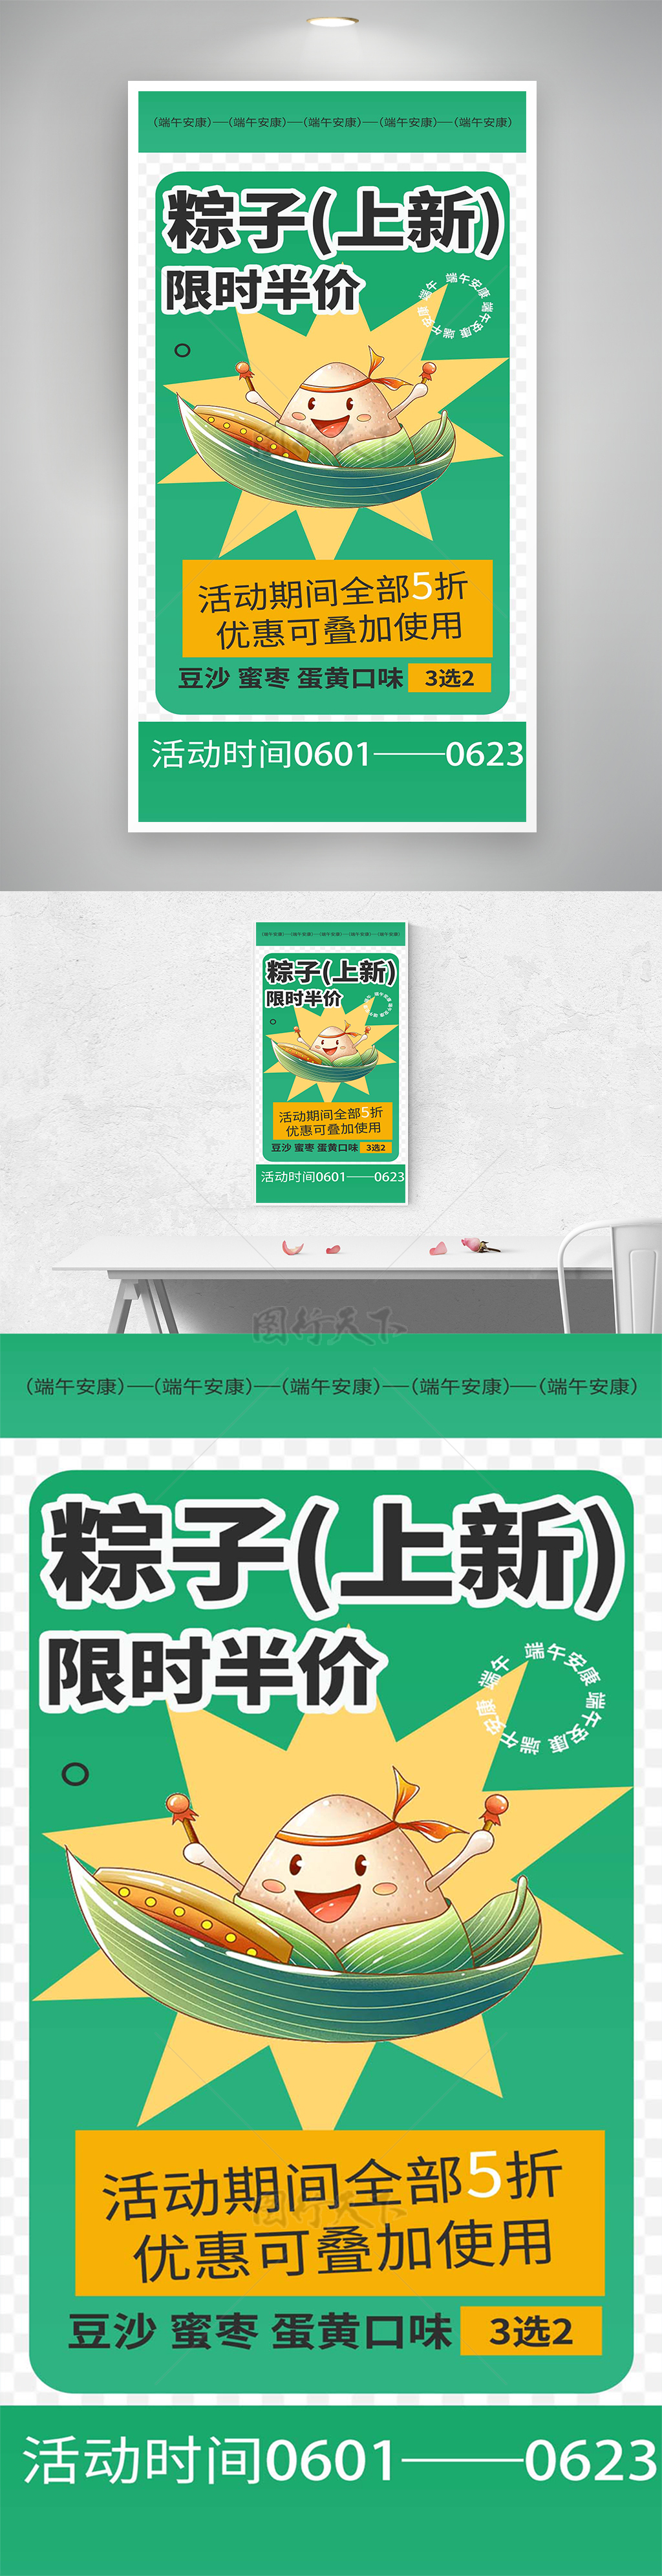 端午节粽子优惠活动促销海报